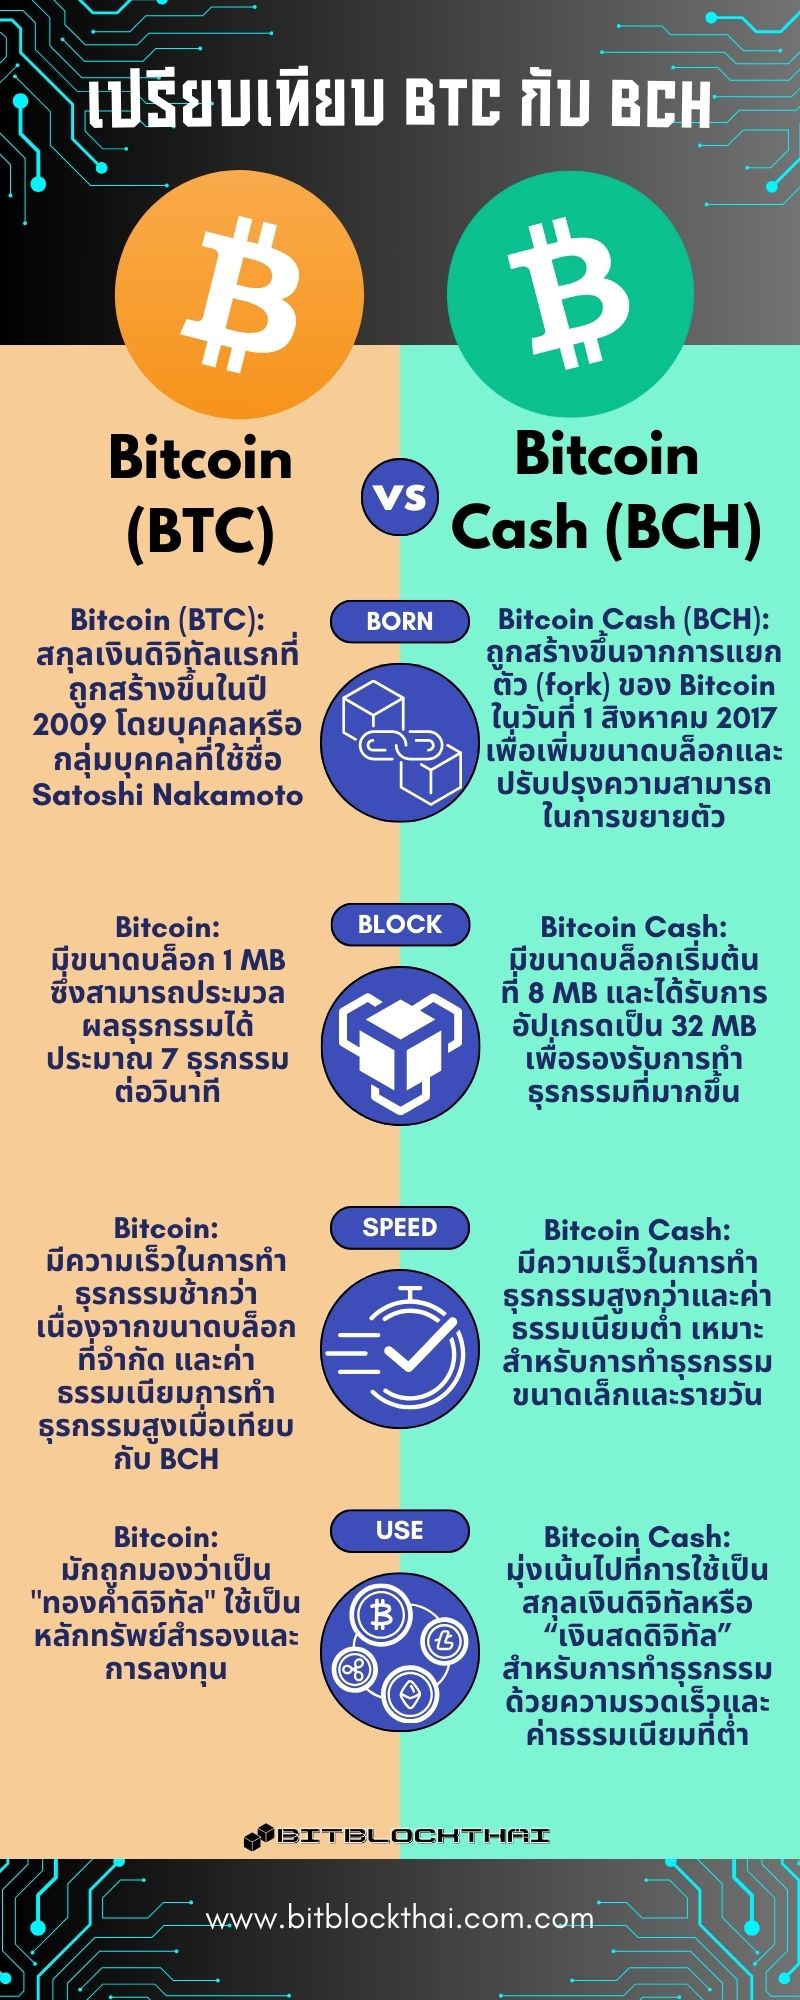 bitcoin กับ bitcoin cash ต่างกันอย่างไร?